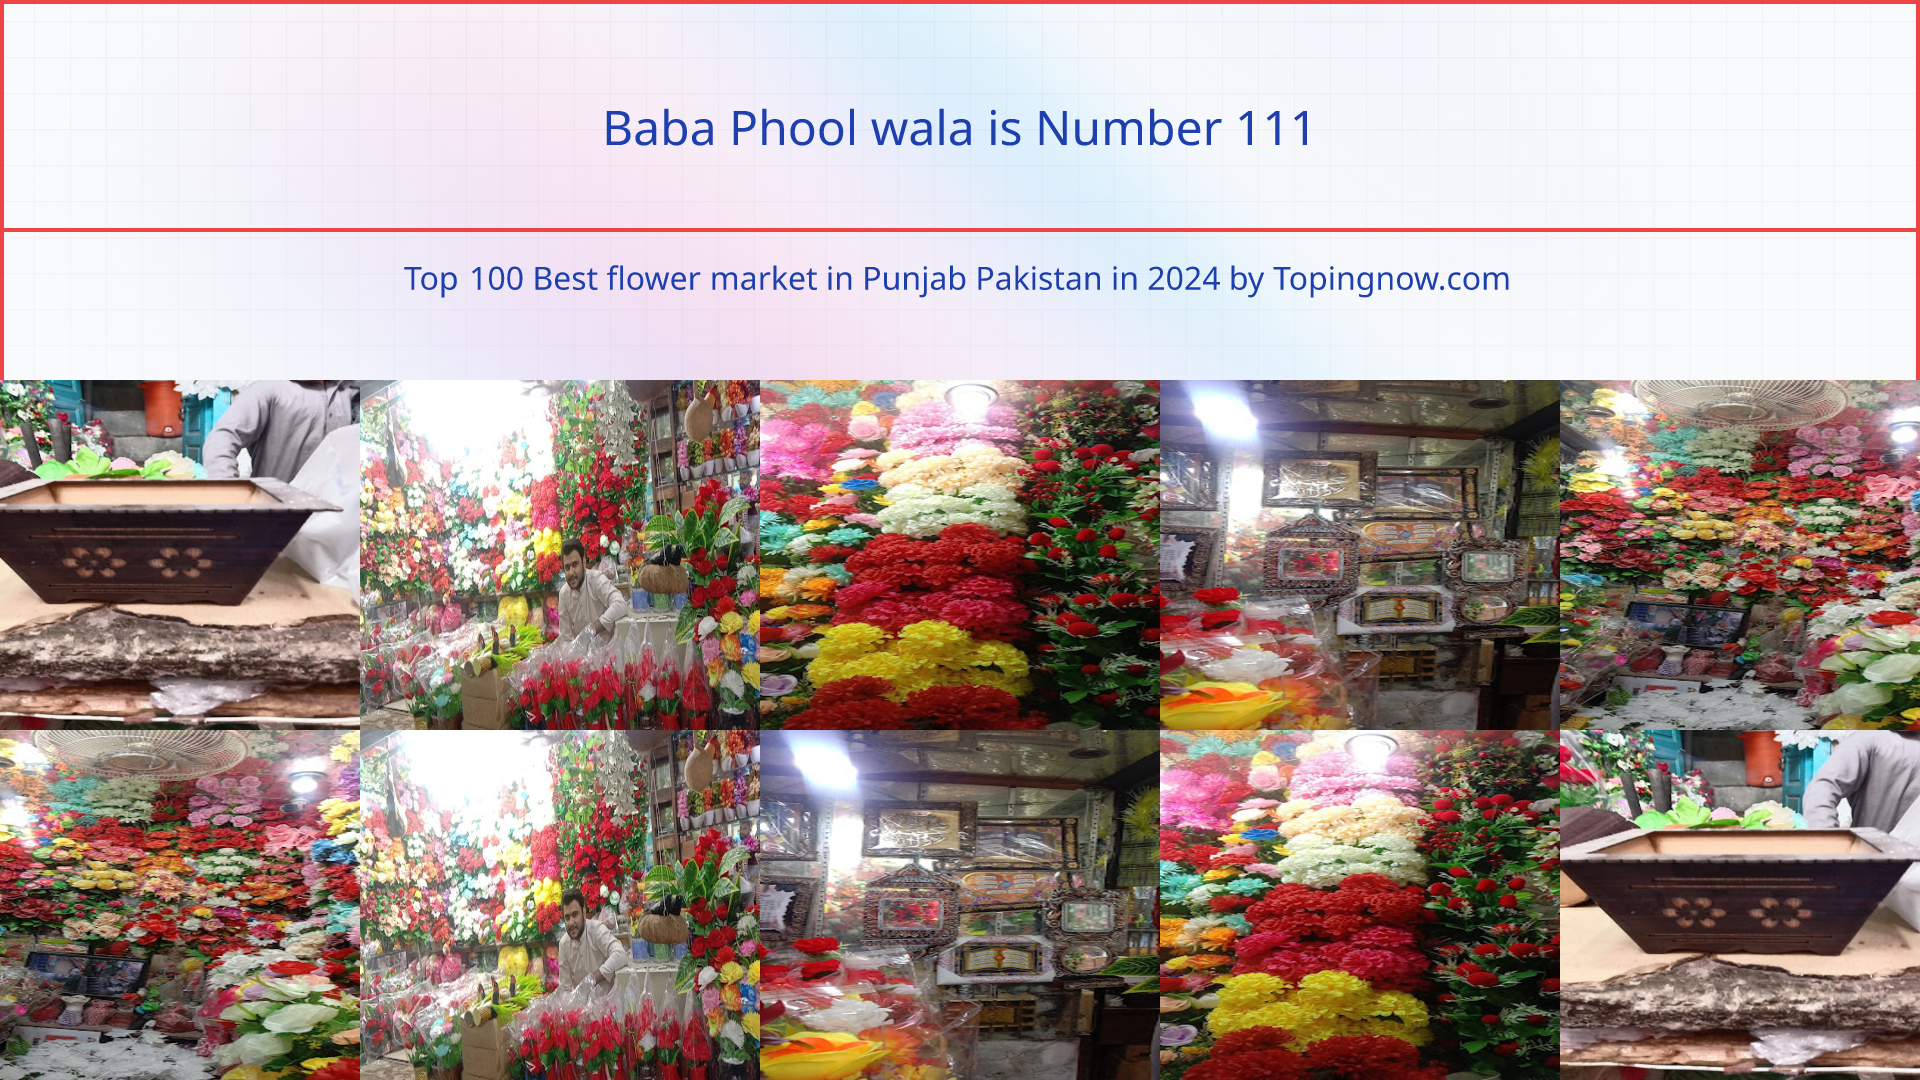 Baba Phool wala: Top 100 Best flower market in Punjab Pakistan in 2024